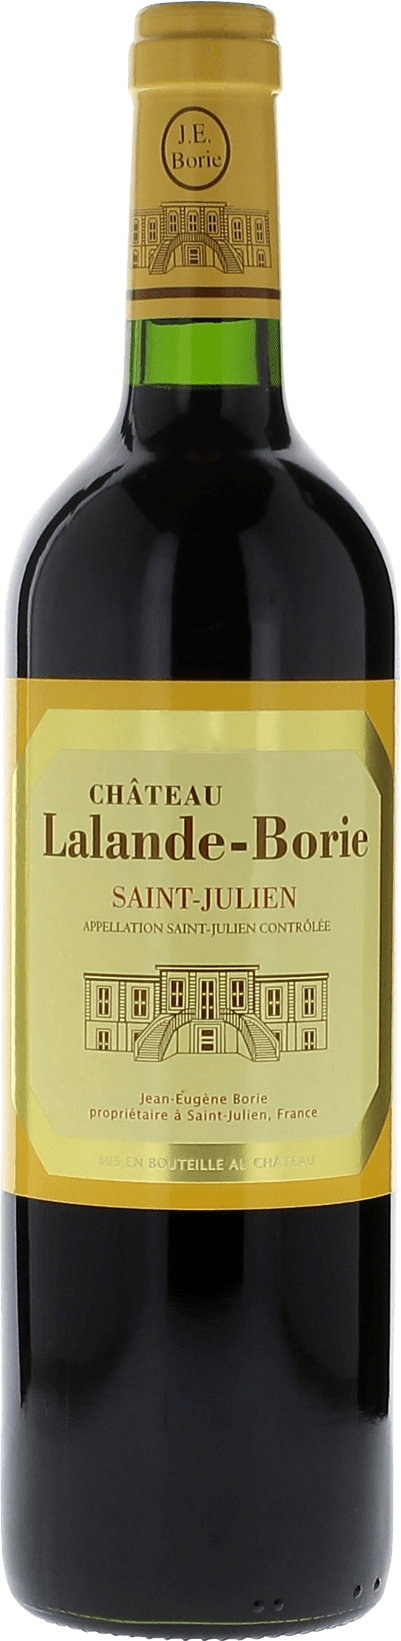 Lalande borie 1983  Saint-Julien, Bordeaux rouge